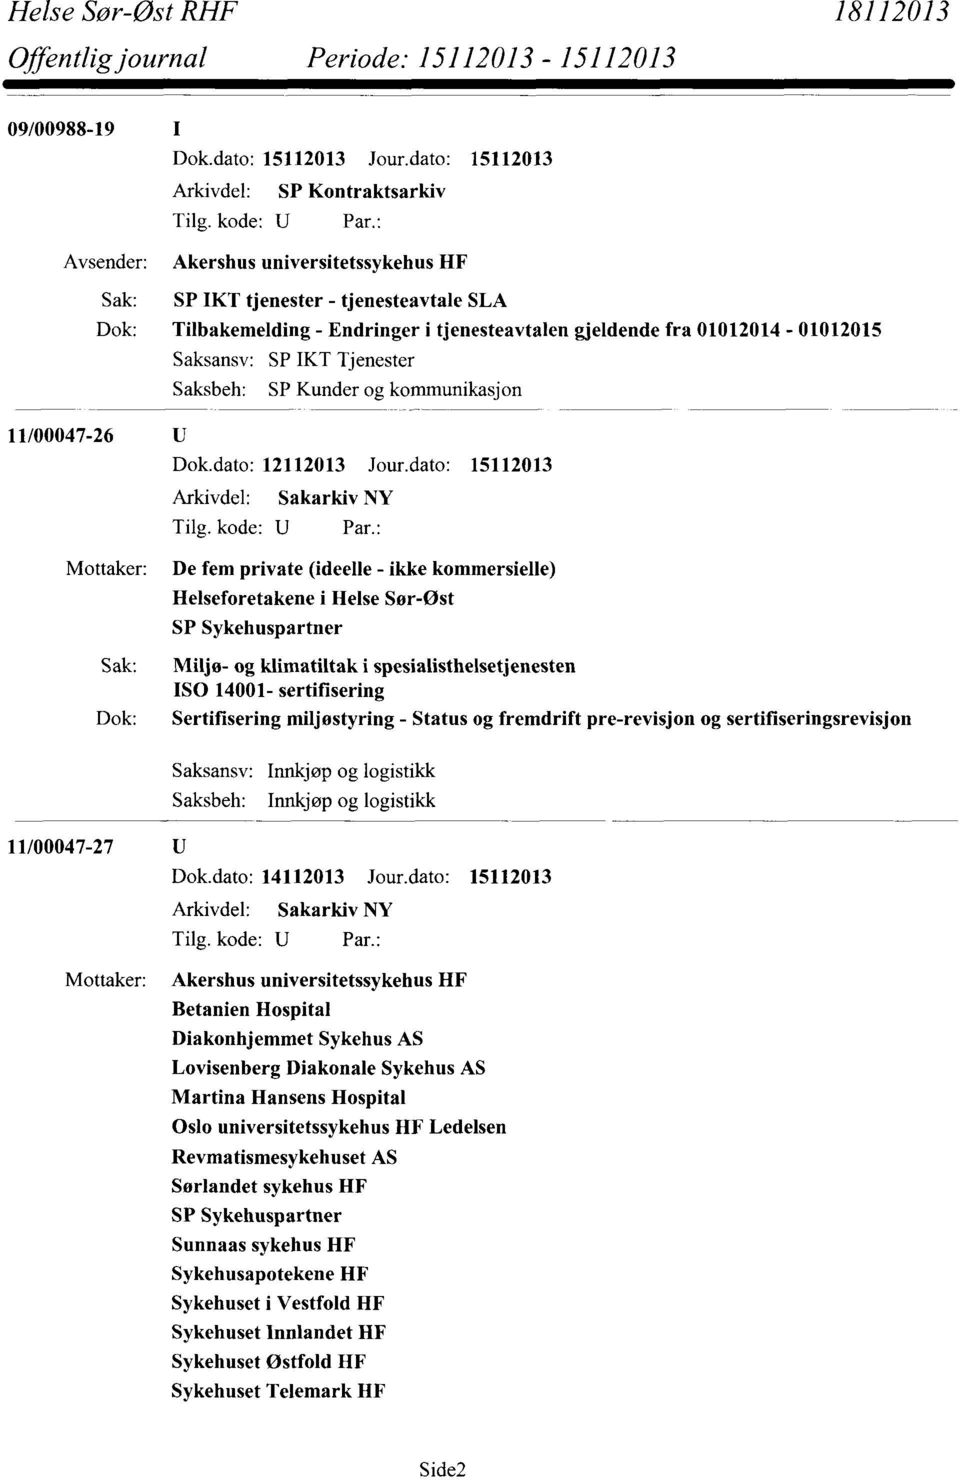 dato: 15112013 Mottaker: De fem private (ideelle - ikke kommersielle) Helseforetakene SP Sykehuspartner i Helse Sør-Øst Sak: Miljø- og klimatiltak i spesialisthelsetjenesten ISO 14001- sertifisering